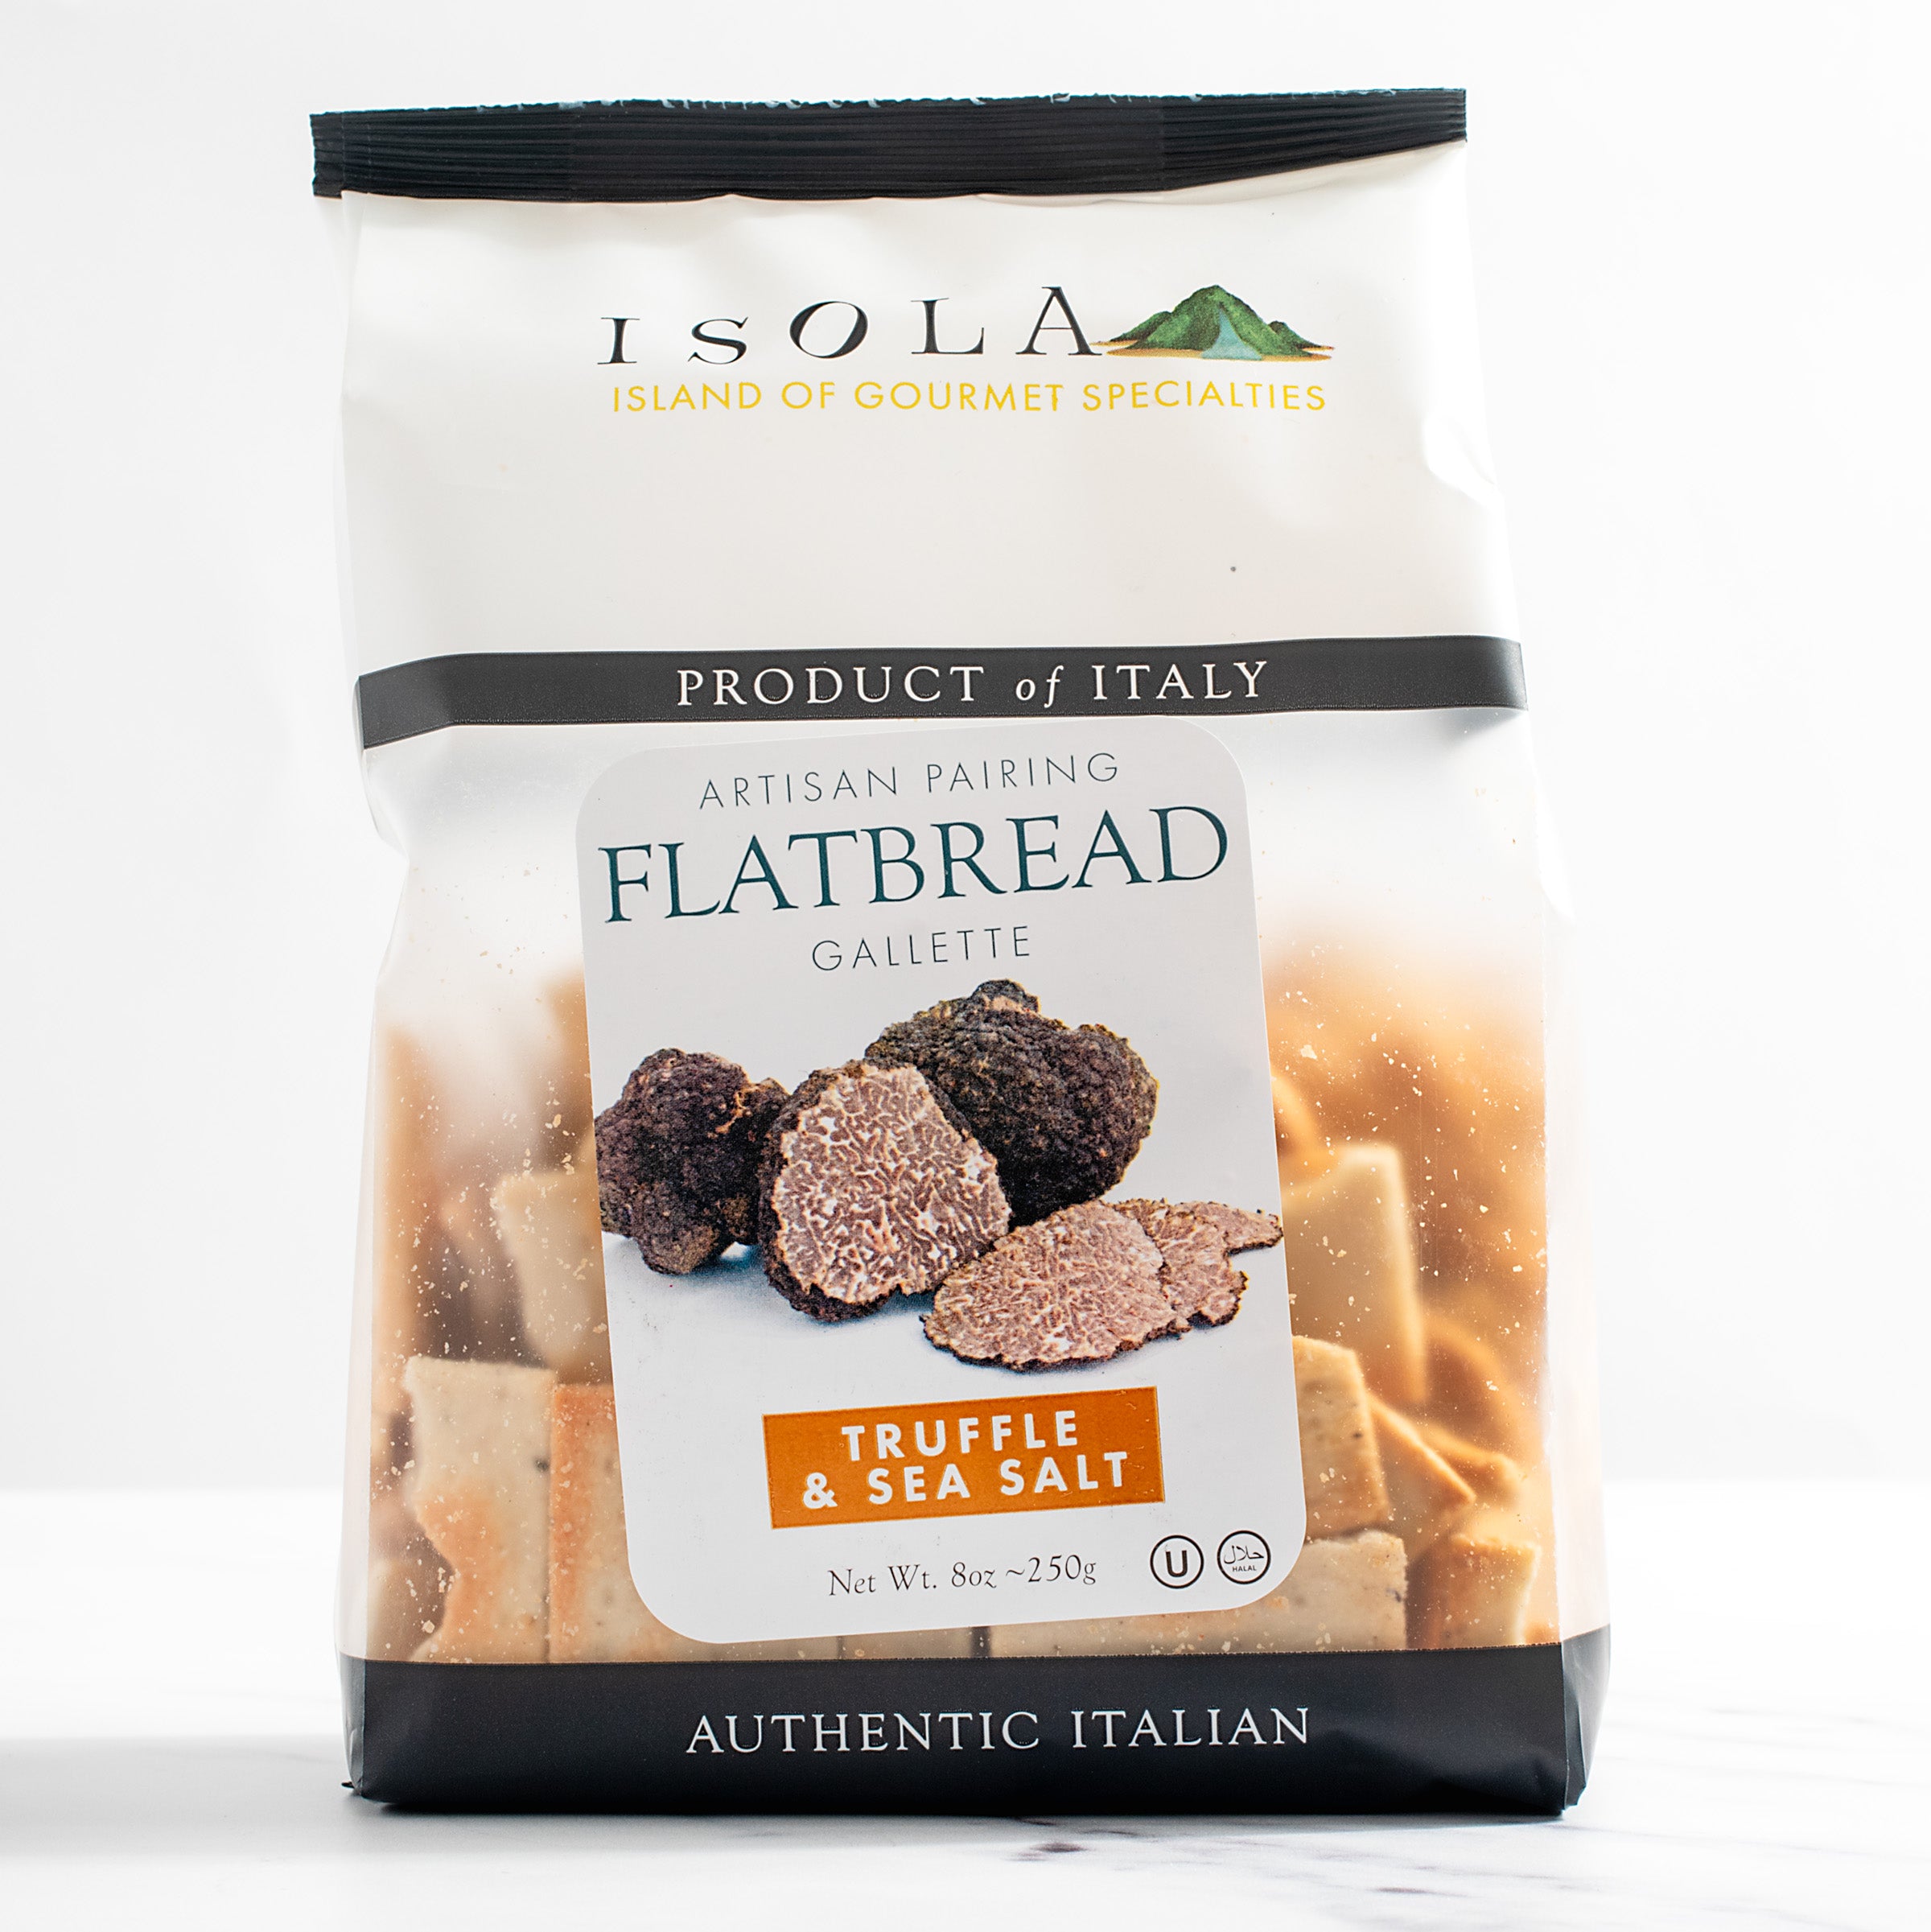 Truffle & Sea Salt Italian Gallette Flatbread